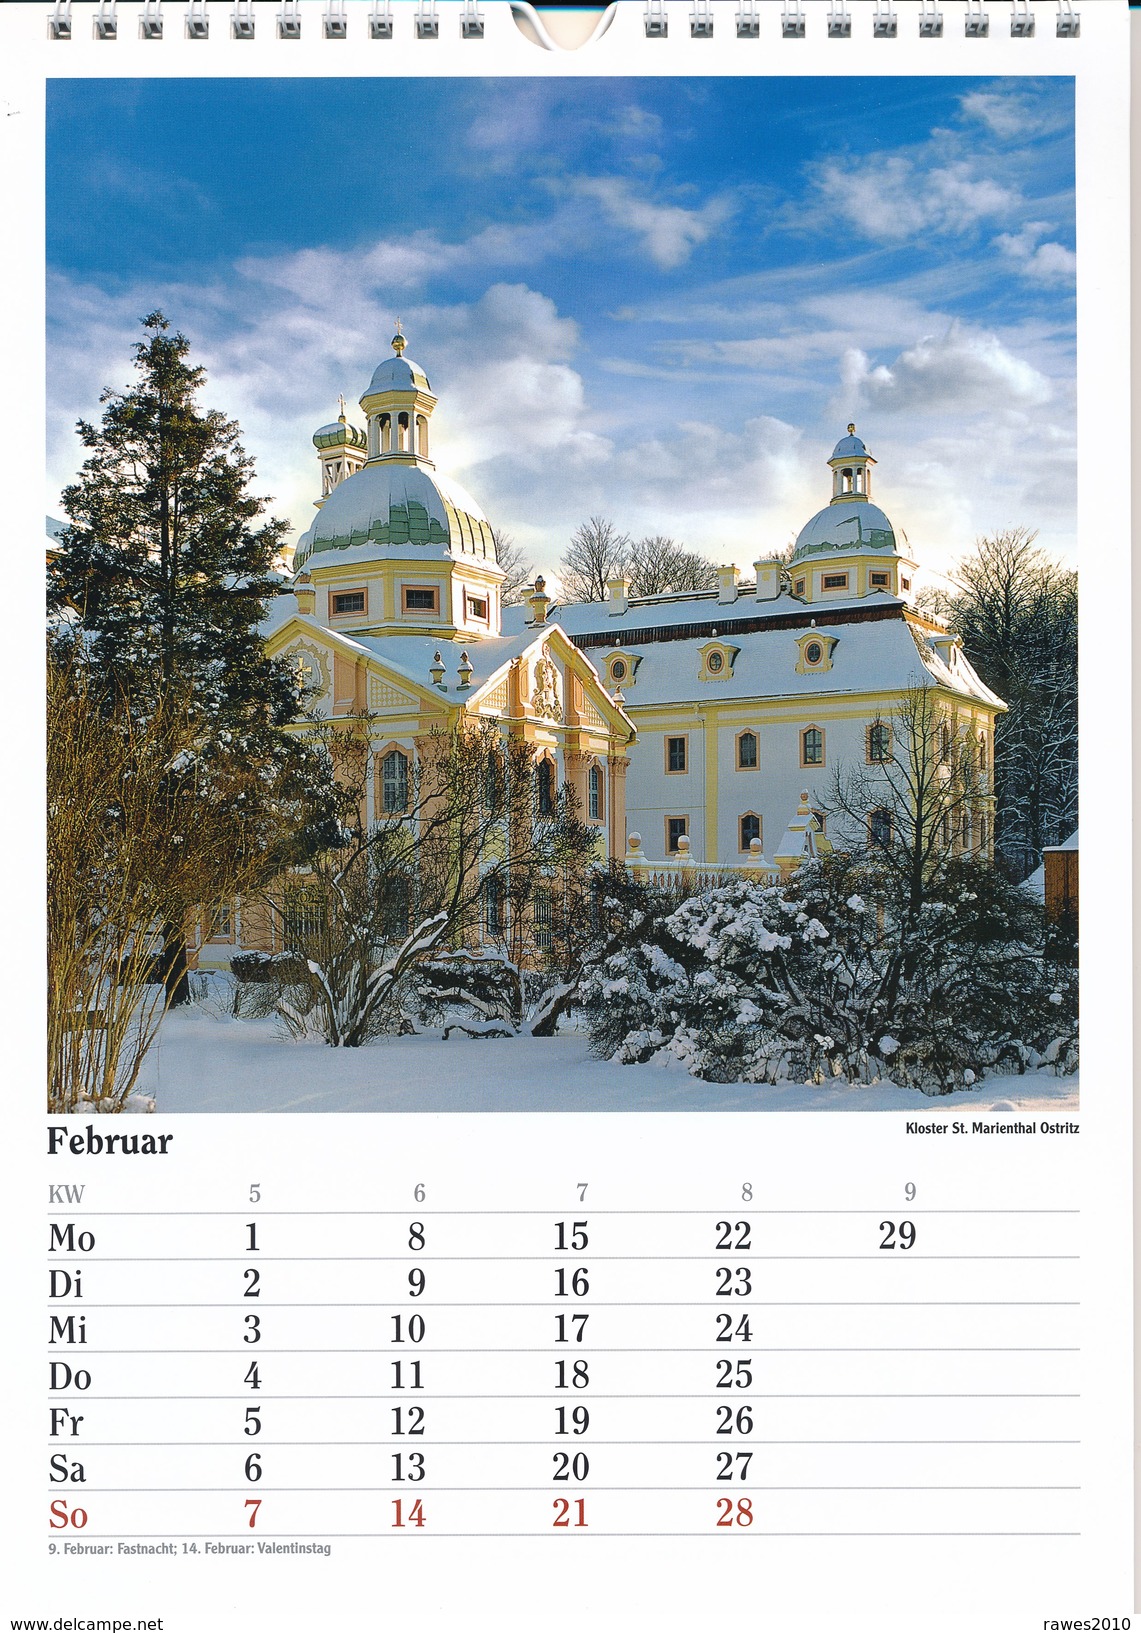 BRD Kalender 2016 Oberlausitz Landschaft Und Kultur Bilder: Ostritz, Herrnhut, Obergurig, Sohland, Görlitz, Zittau Usw. - Kalender